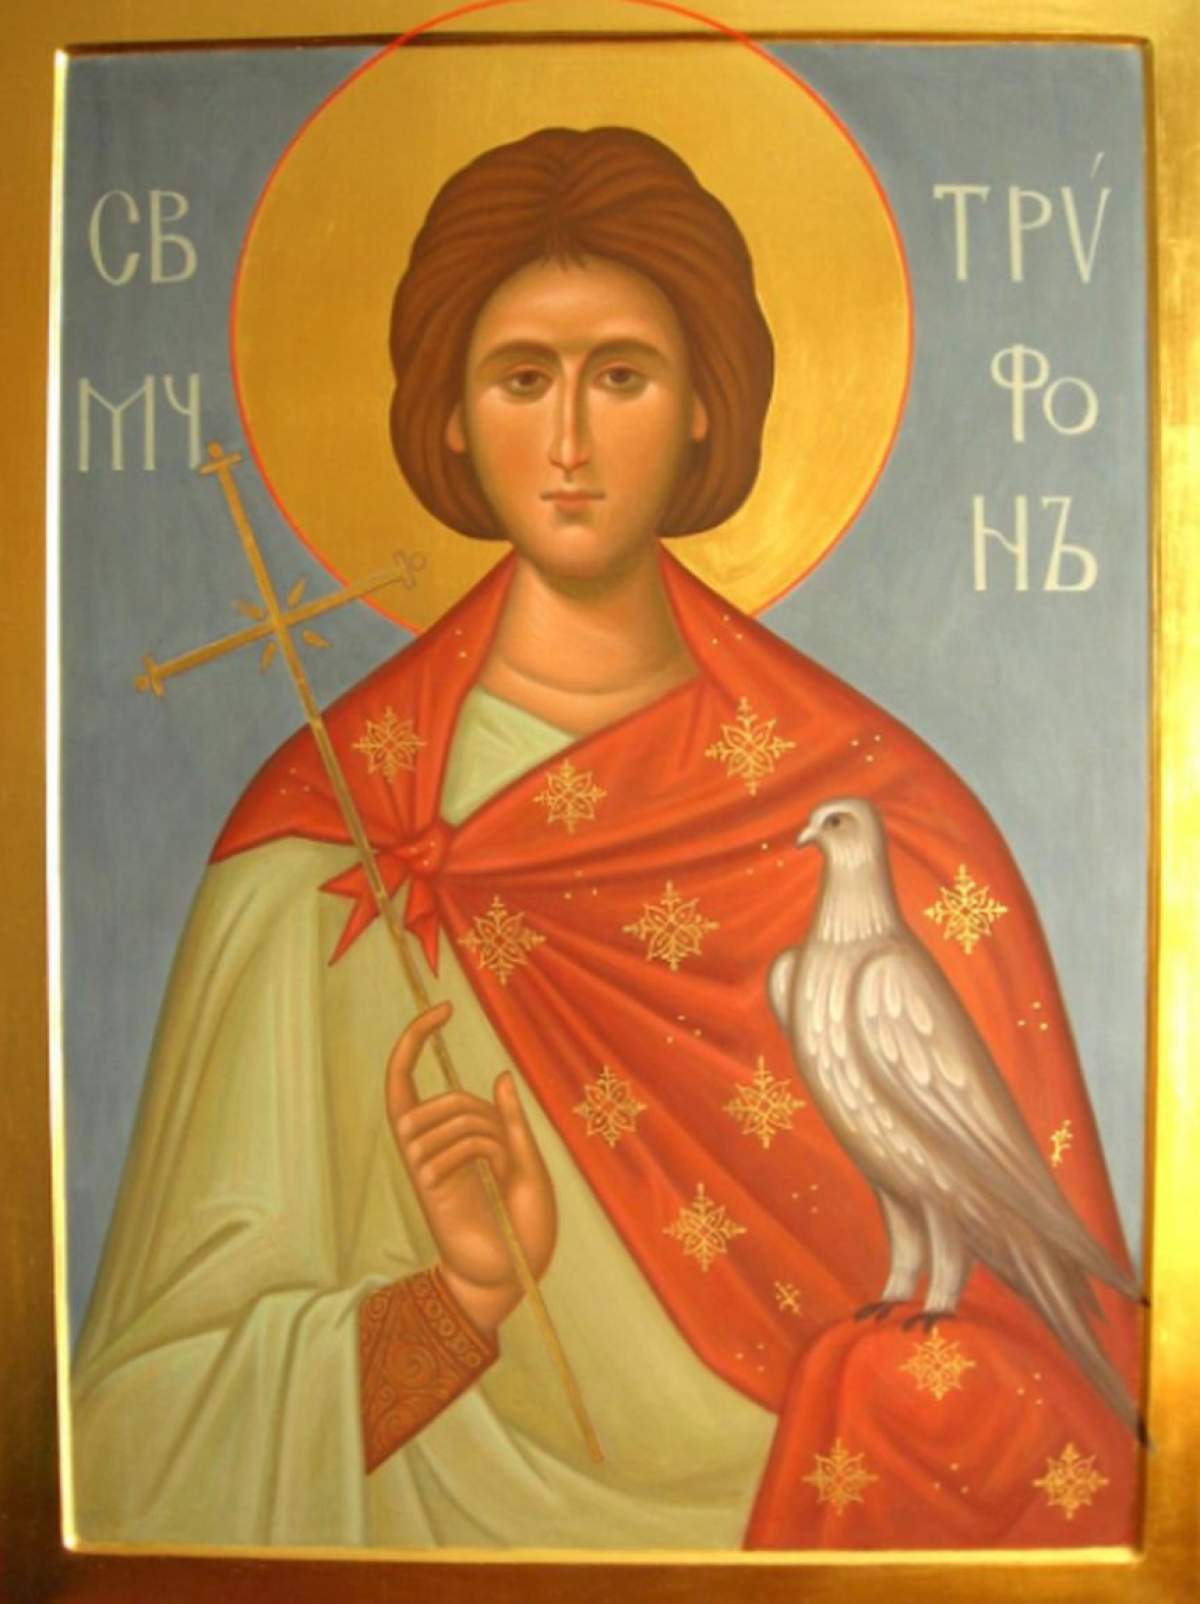 Pe 1 februarie este sărbătorit Sfântul Trifon, alungător al duhurilor necurate. Ce este bine să facem în această zi